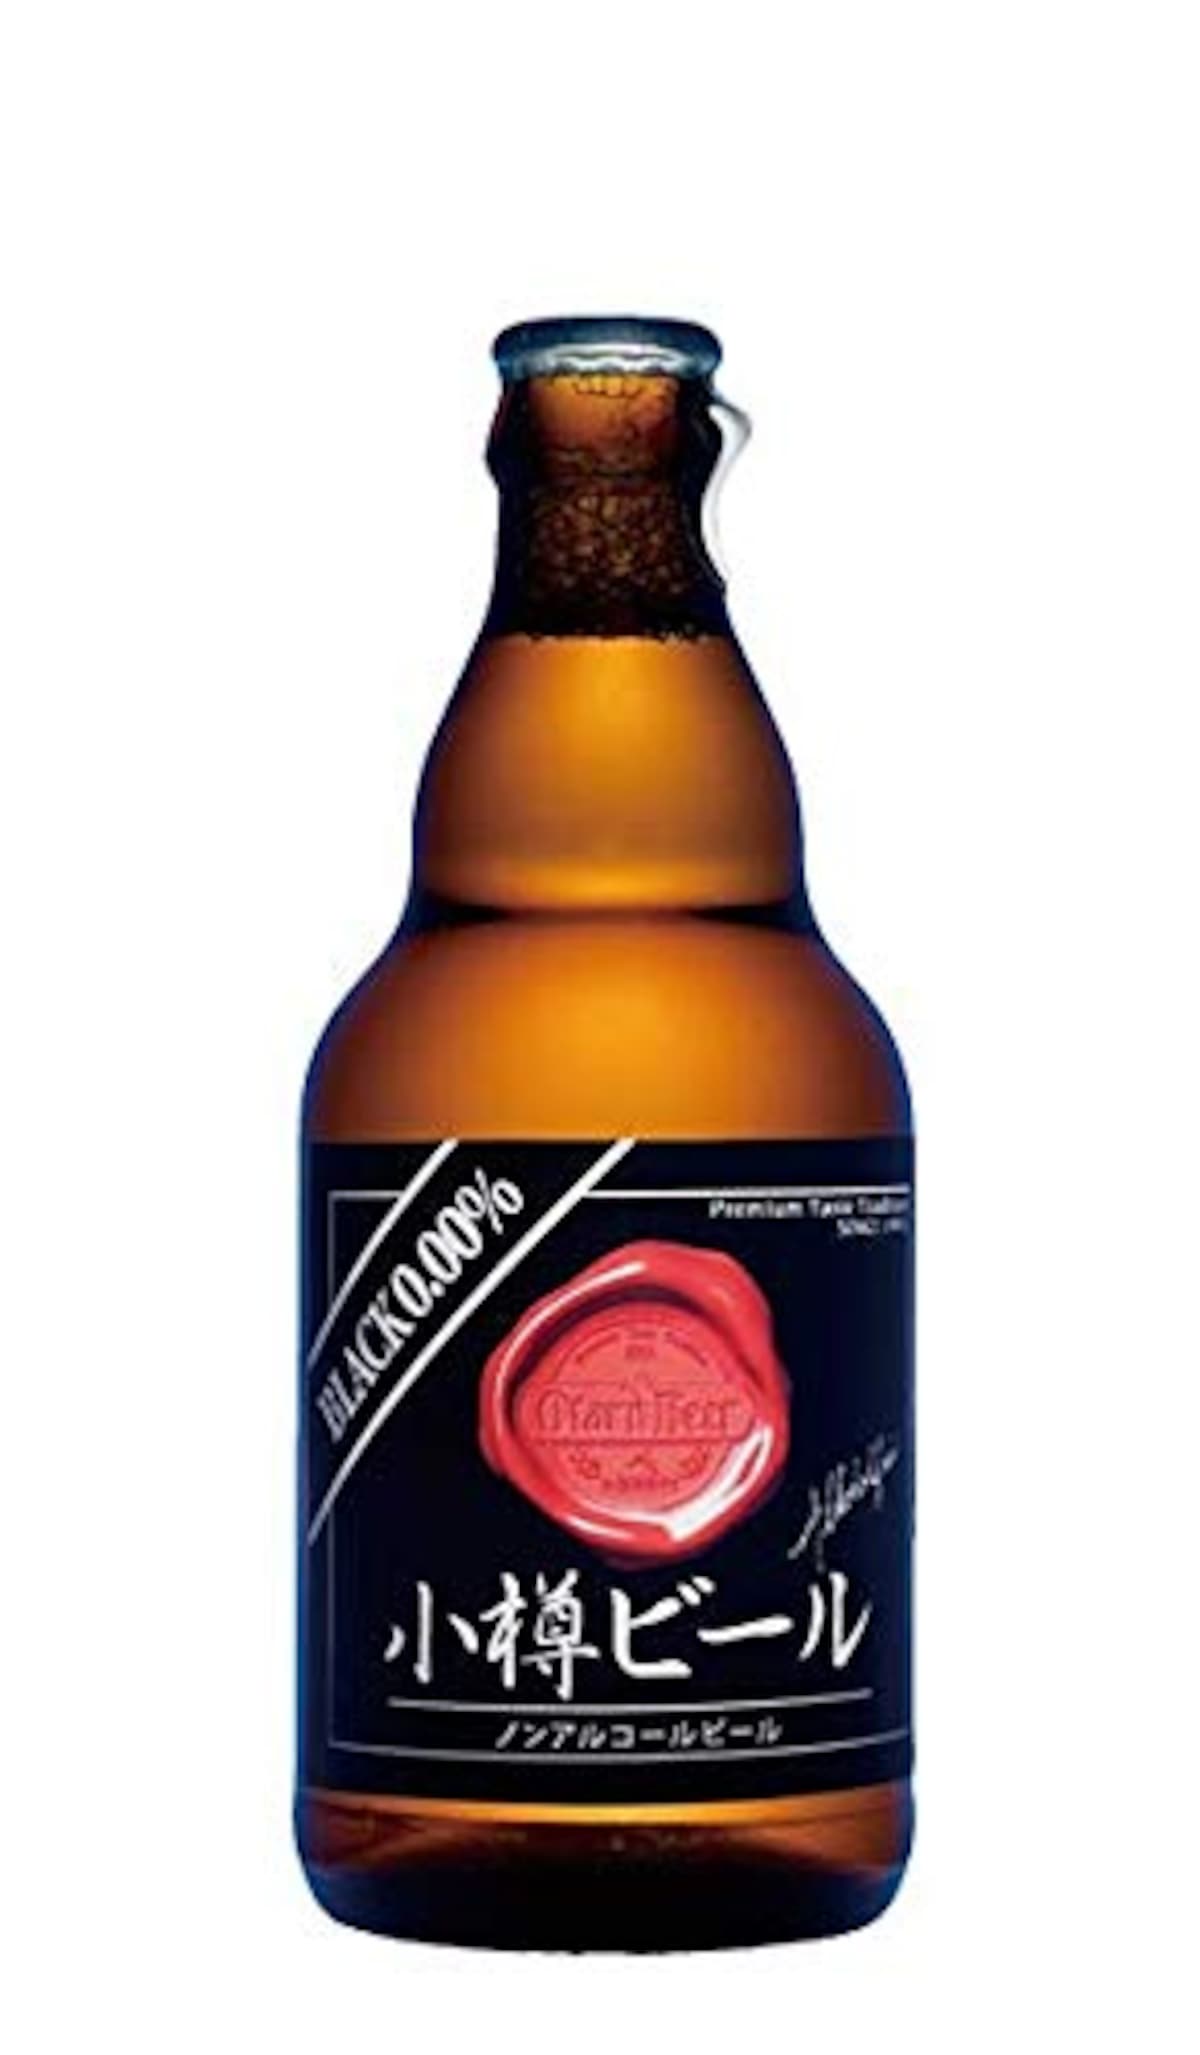  ノンアルコールビール ブラック画像1 